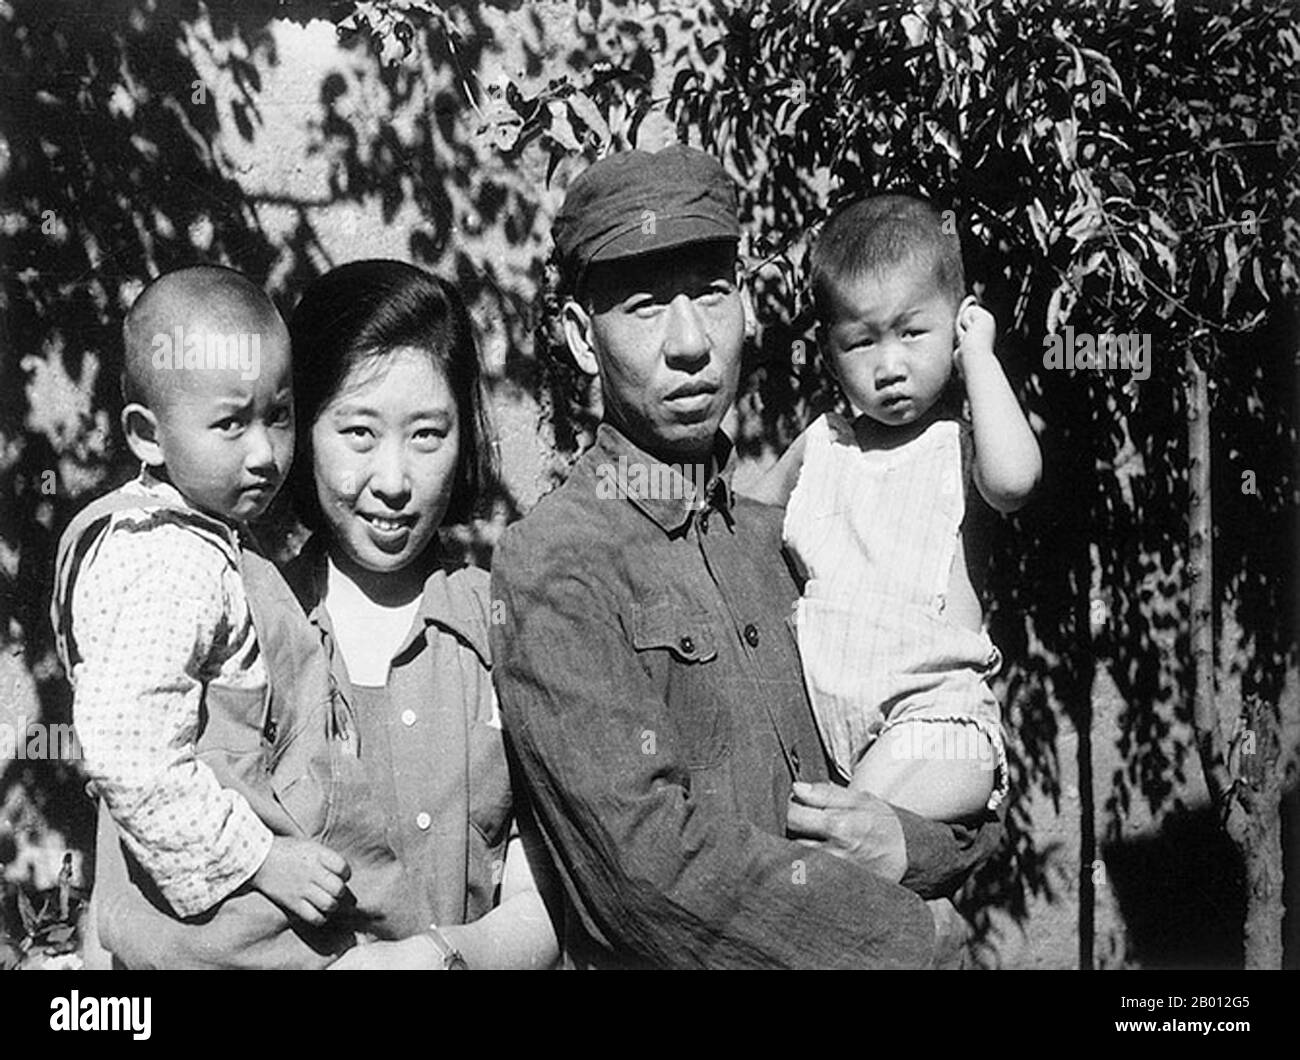 Cina: Liu Shaoqi con la moglie Wang Guangmei e due dei loro figli, anni '40. Liu Shaoqi (Liu Shao-ch'i, 24 novembre 1898 – 1969 novembre 12) è stato un . Dal 27 aprile 1959 al 31 ottobre 1968 è stato presidente della Repubblica popolare cinese, capo di Stato cinese, durante il quale ha attuato politiche di ricostruzione economica in Cina. Cadde di favore negli anni Sessanta successivi durante la Rivoluzione Culturale a causa dei suoi punti di vista percepiti di 'destra' e, viene teorizzato, perché Mao considerava Liu come una minaccia al suo potere. Foto Stock